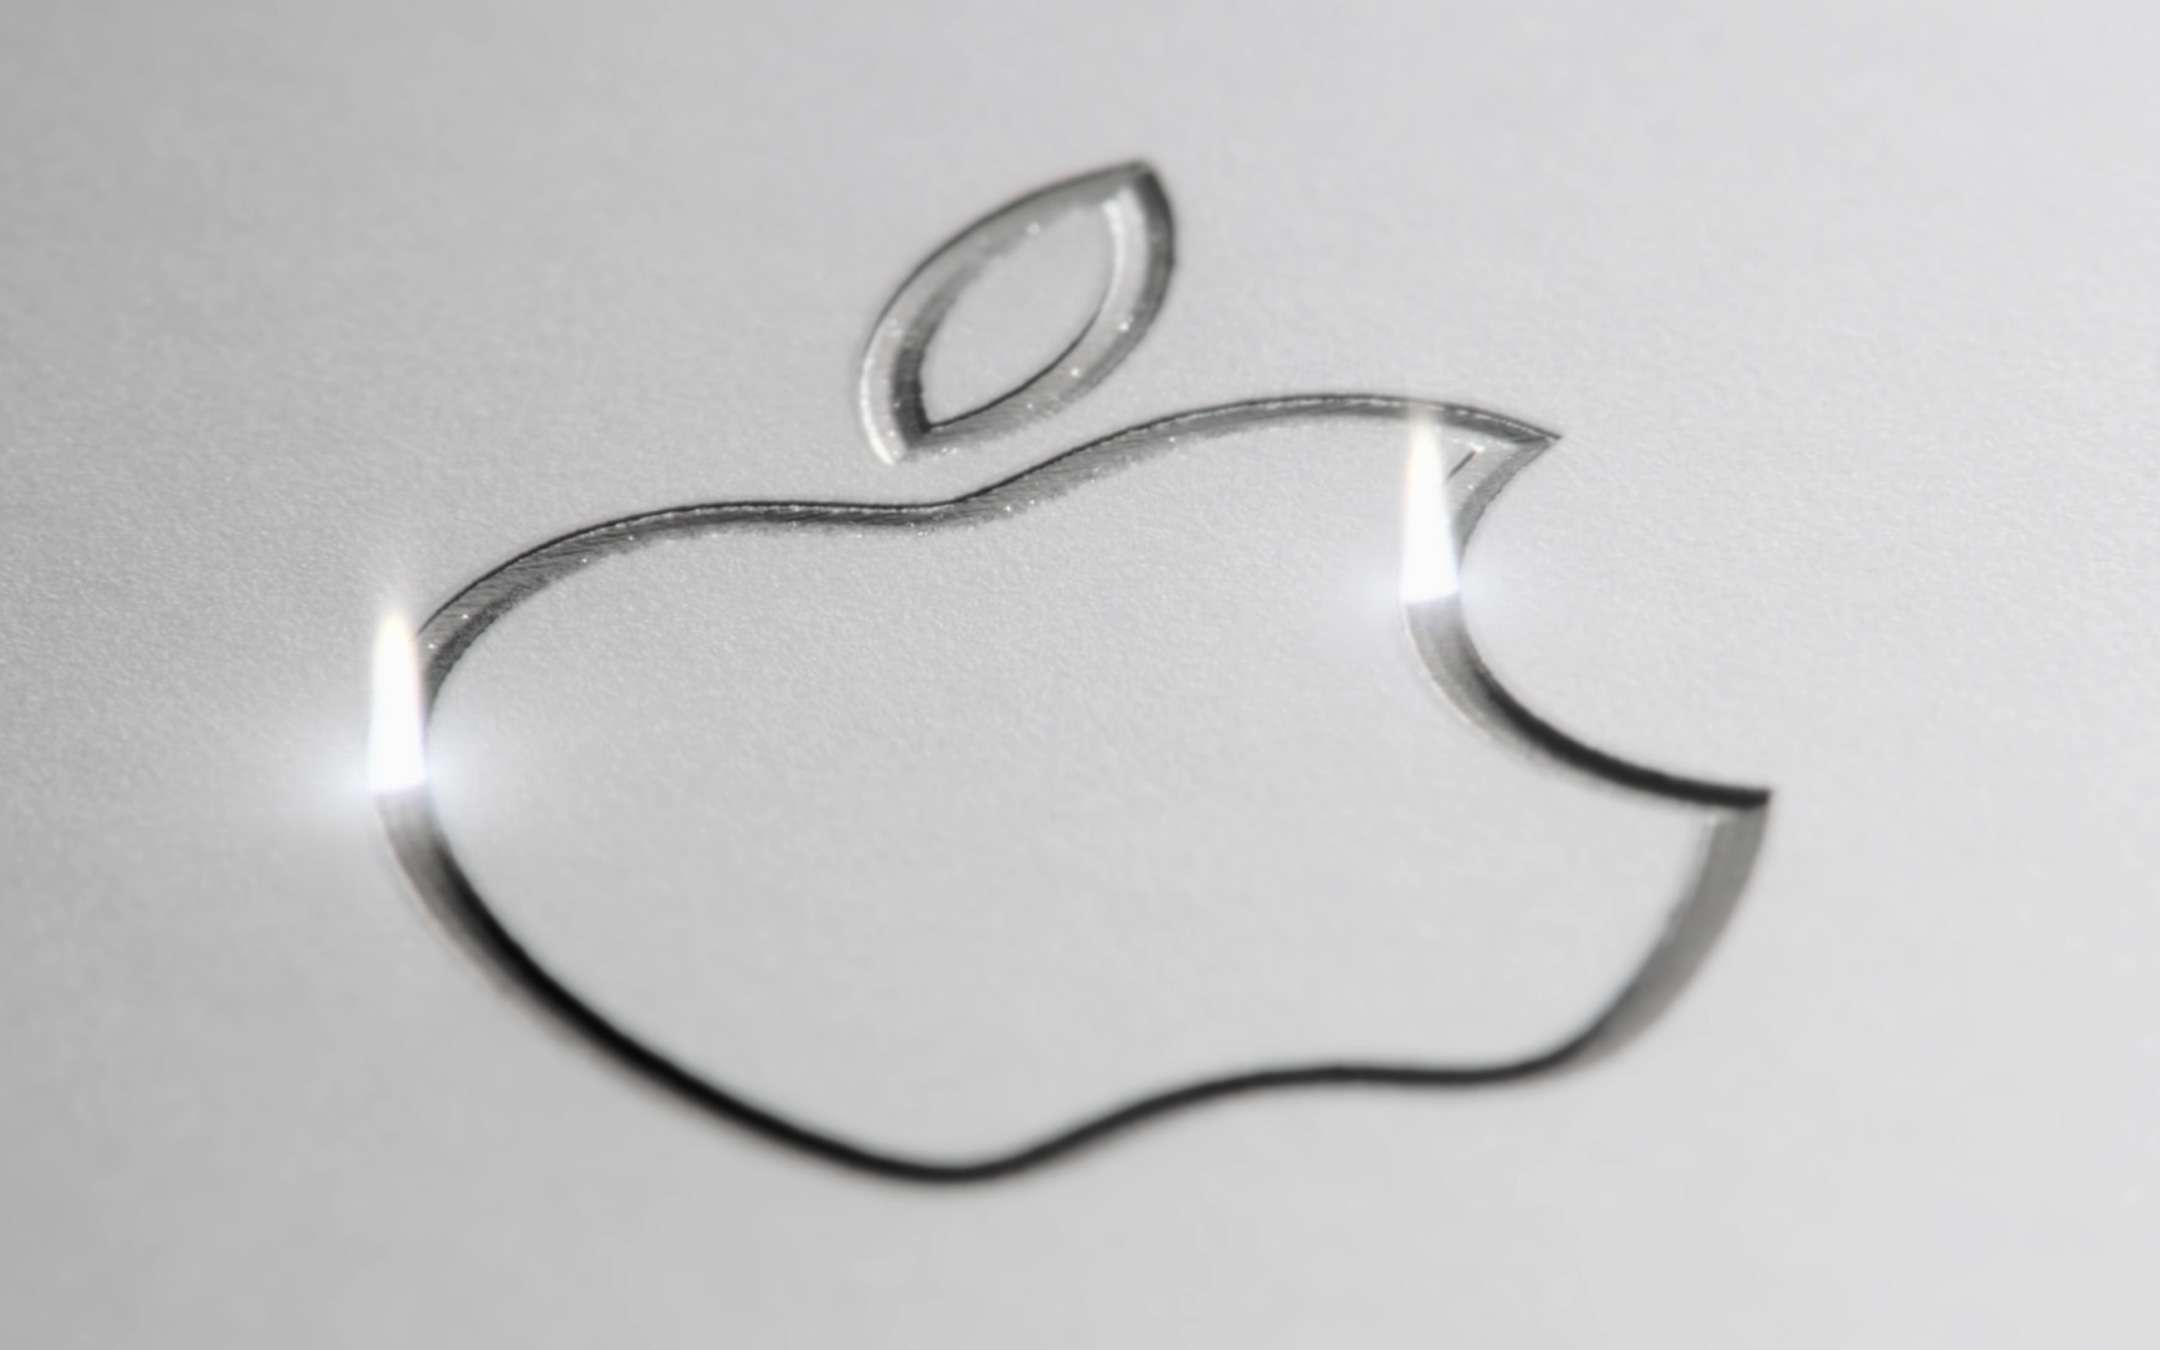 Apple Pay continua a crescere e preoccupa qualcuno